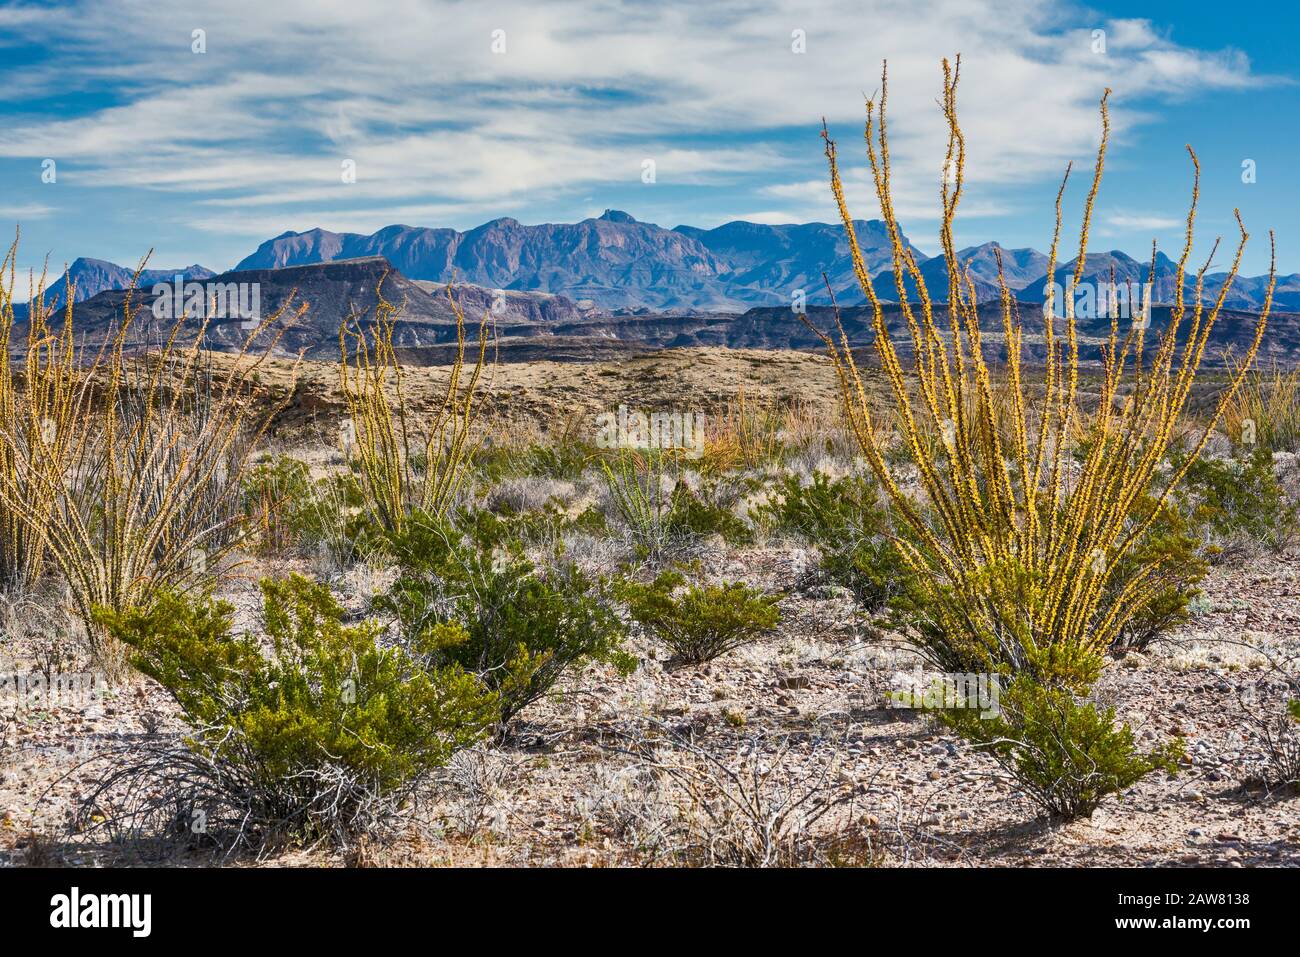 Chisos Montañas sobre el desierto de Chihuahua, ocotillos y arbusto creosota en primer plano, vista cerca de Castolon, Parque Nacional Big Bend, Texas, EE.UU. Foto de stock